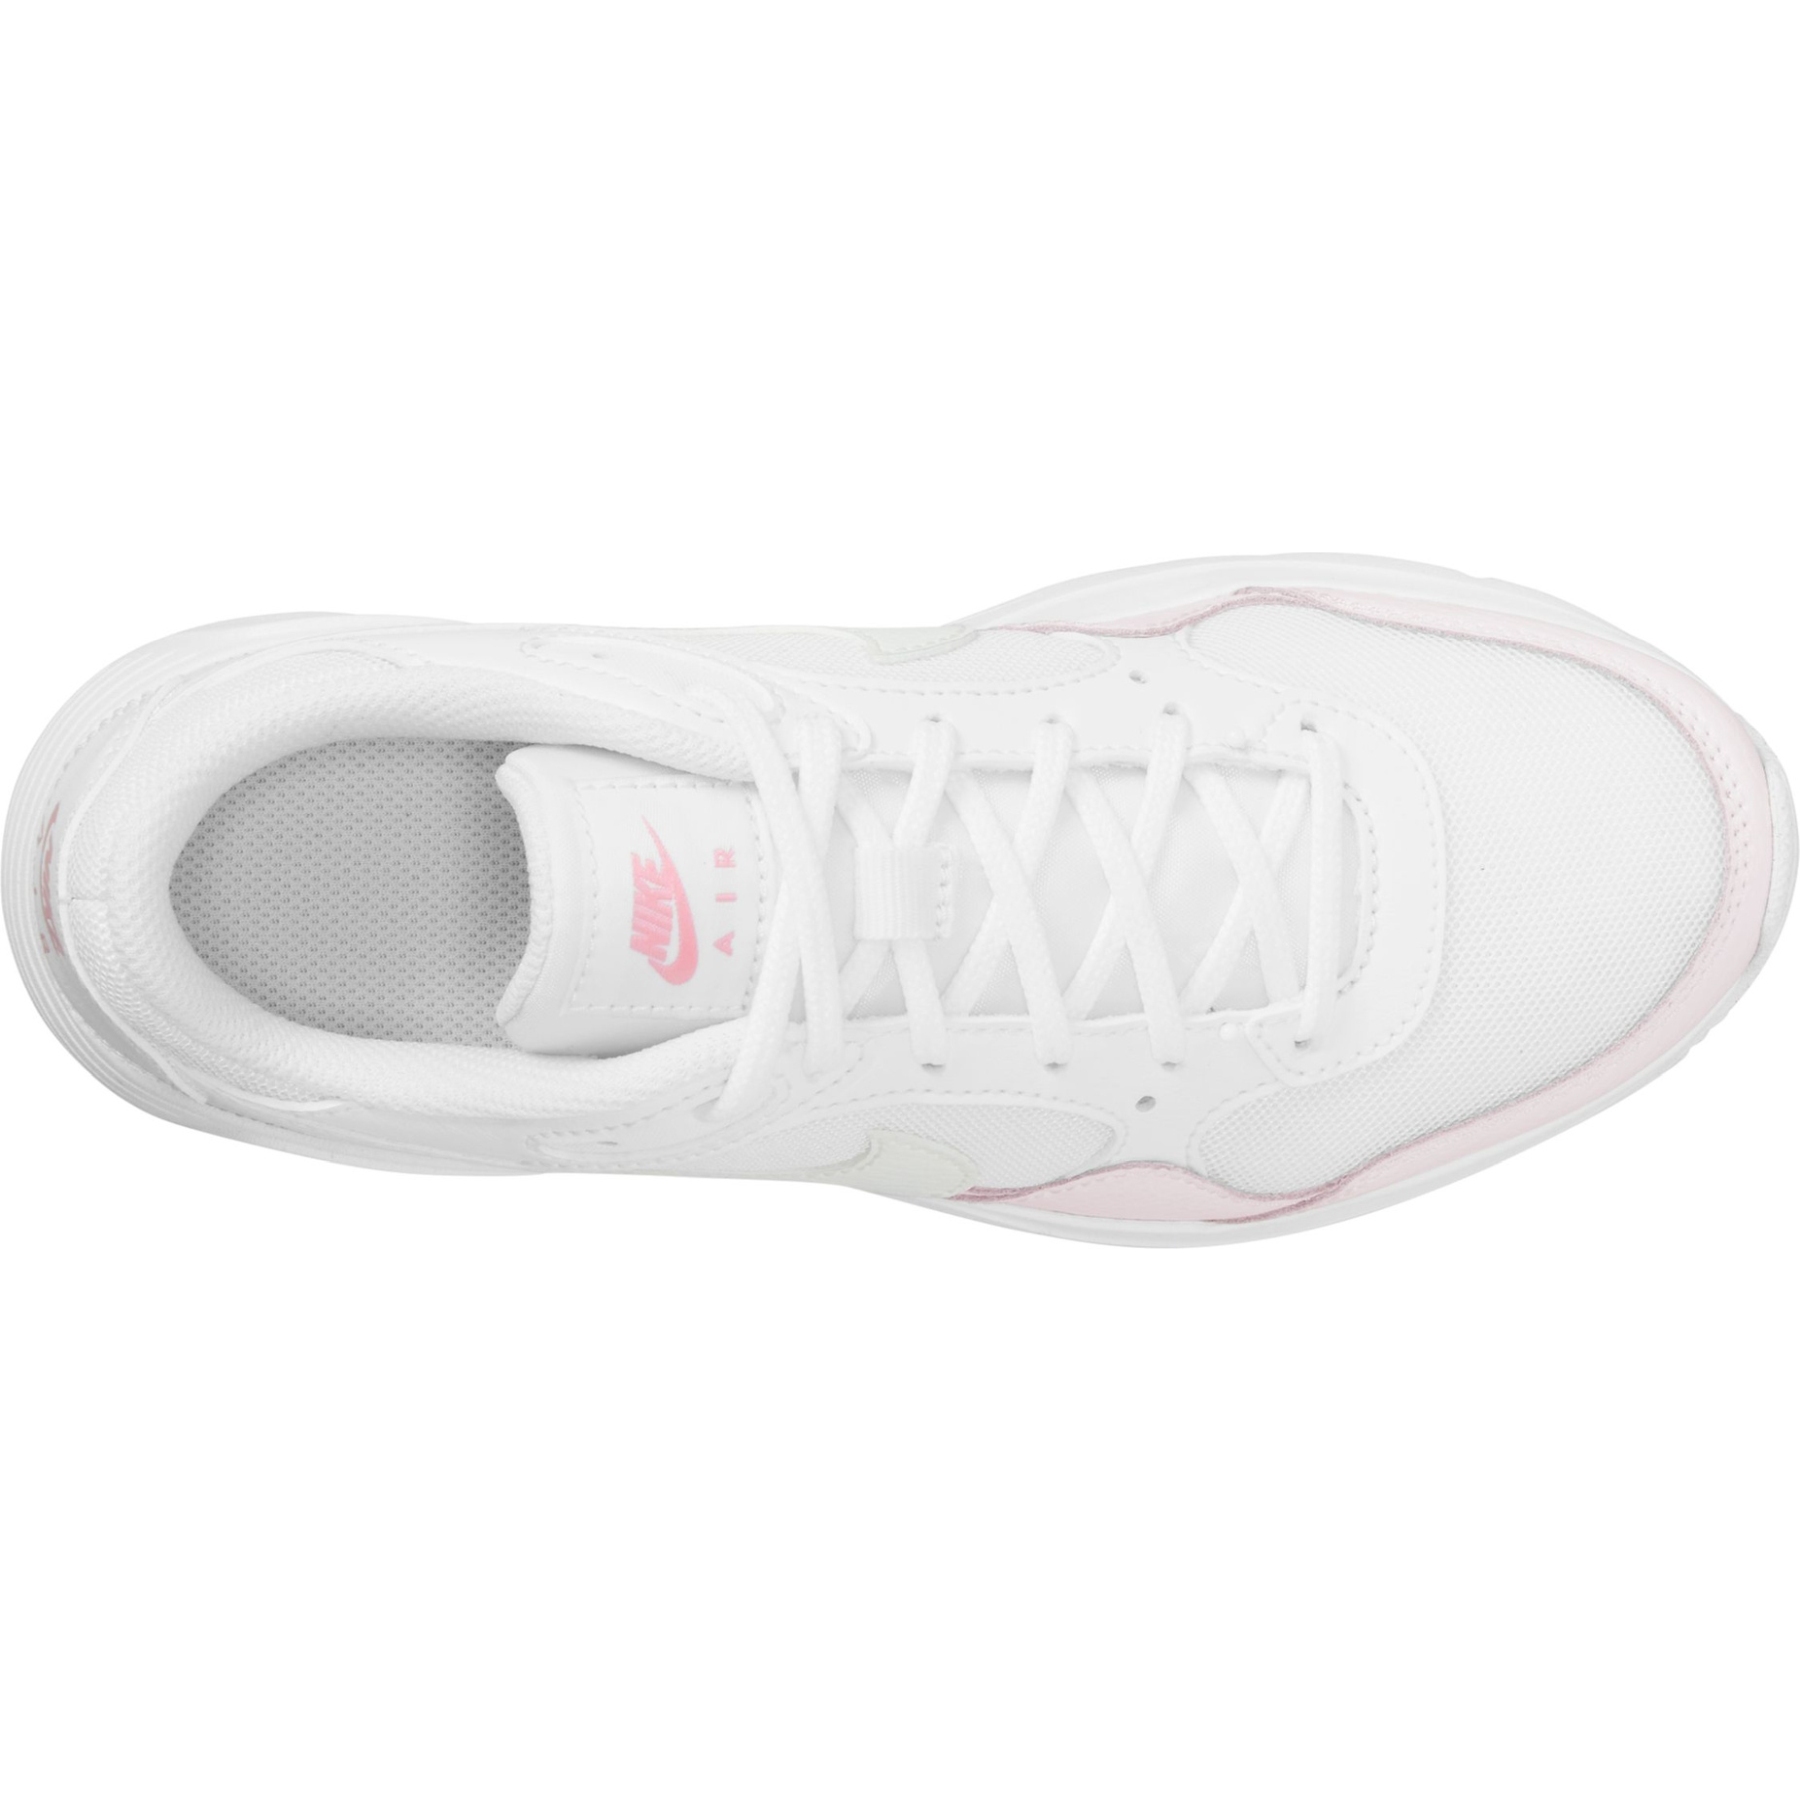 voor de hand liggend kin vork Nike Air Max SC Kinderschuhe - white/summit white-pearl pink CZ5358-115